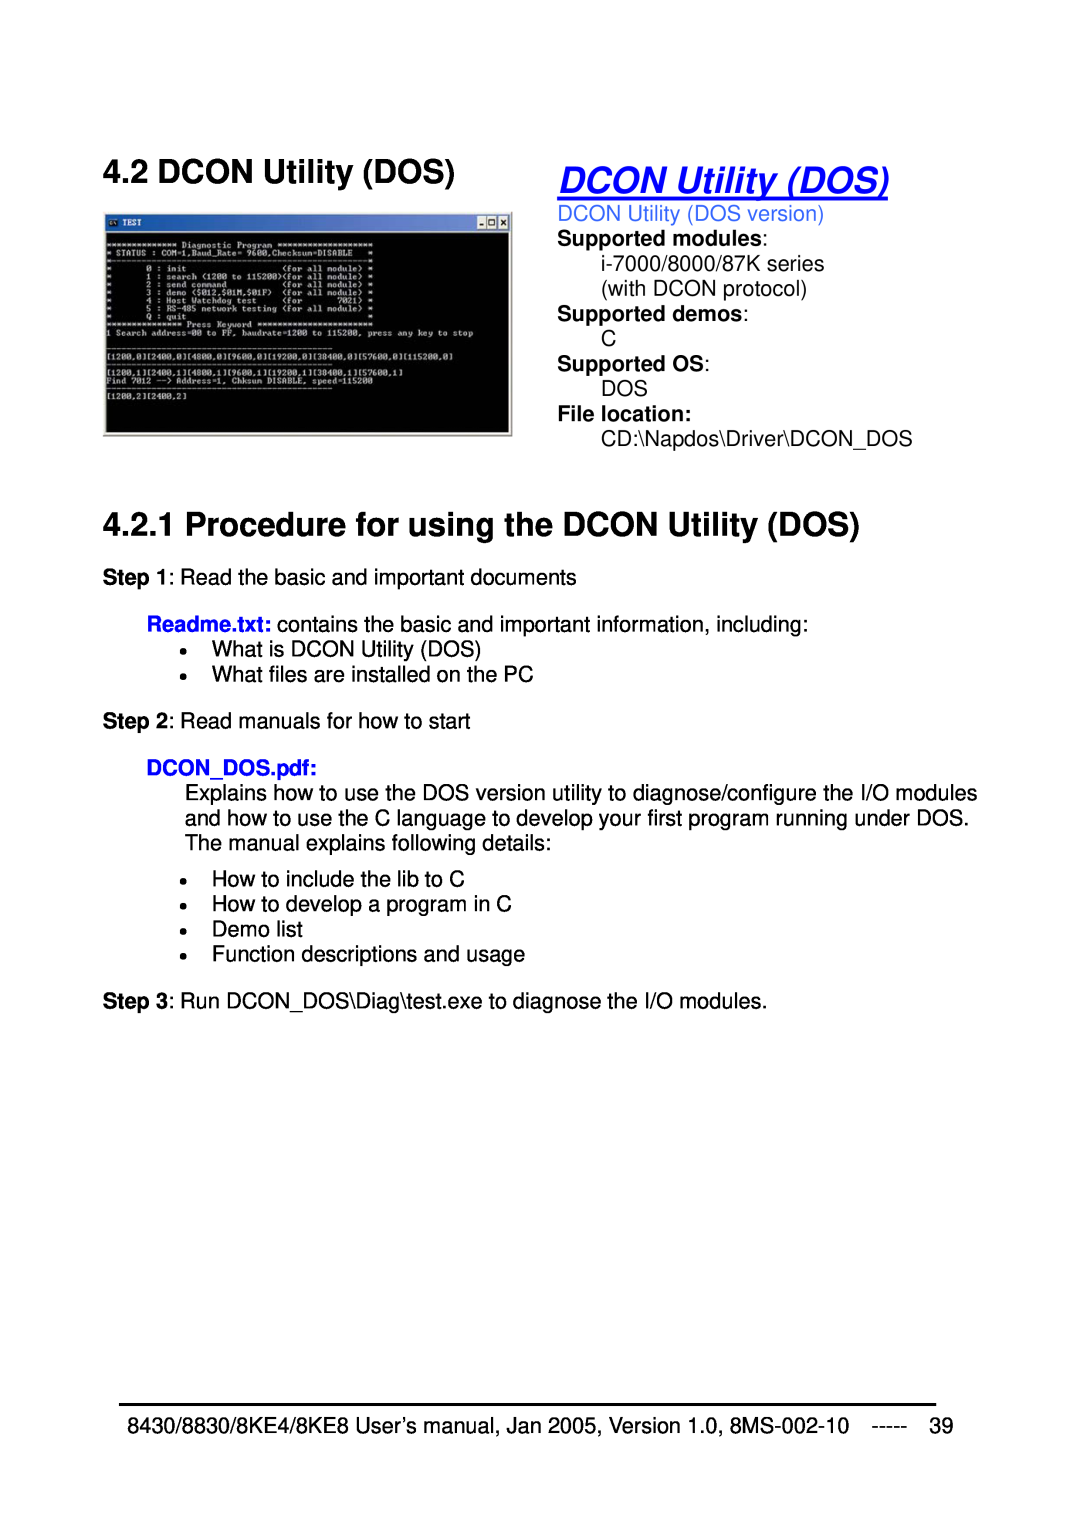 ICP DAS USA 8830, 8KE8, 8KE4, 8430 Procedure for using the DCON Utility DOS, DCON Utility DOS version, DCONDOS.pdf 